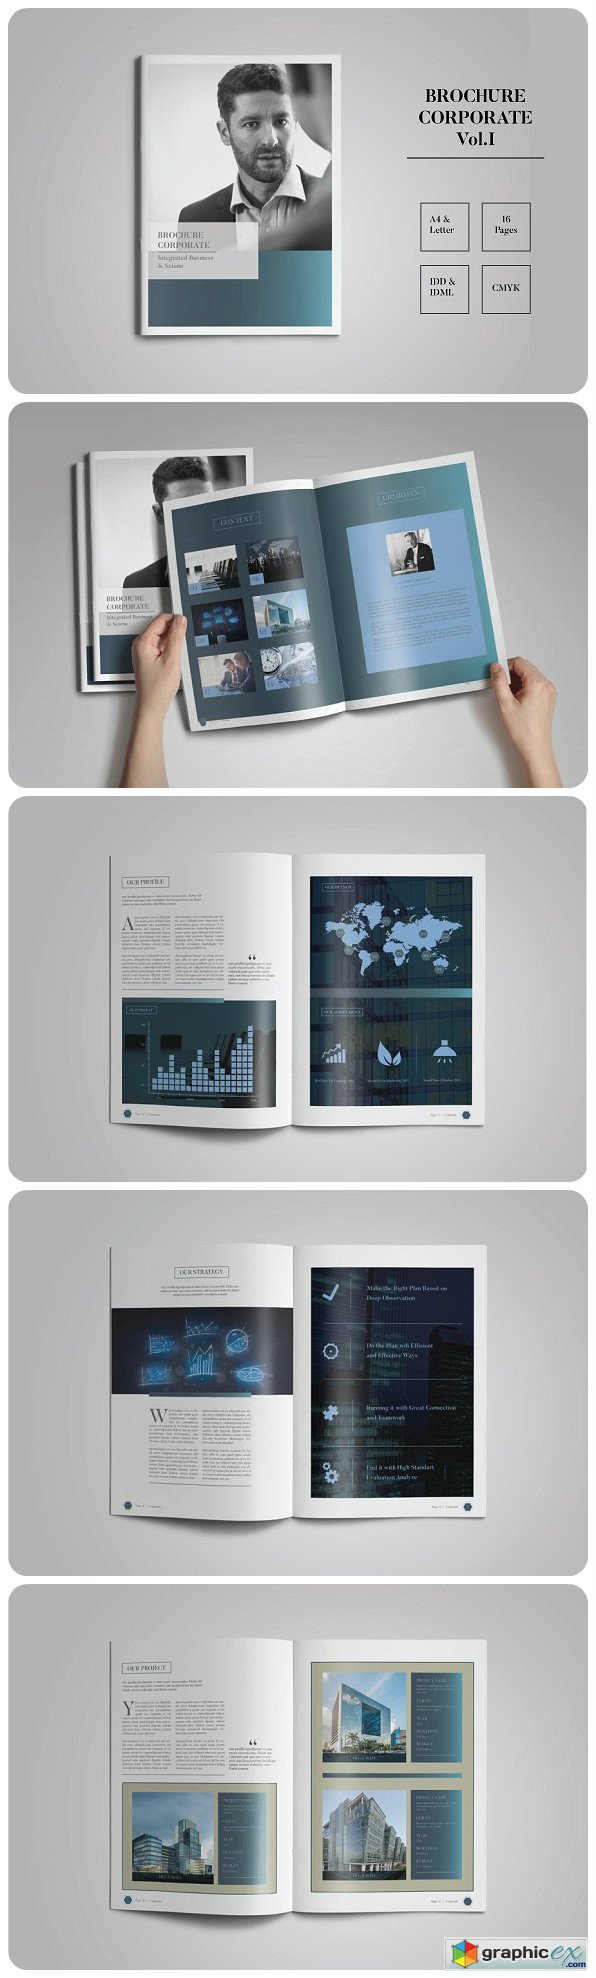 Brochure Corporate Vol. I